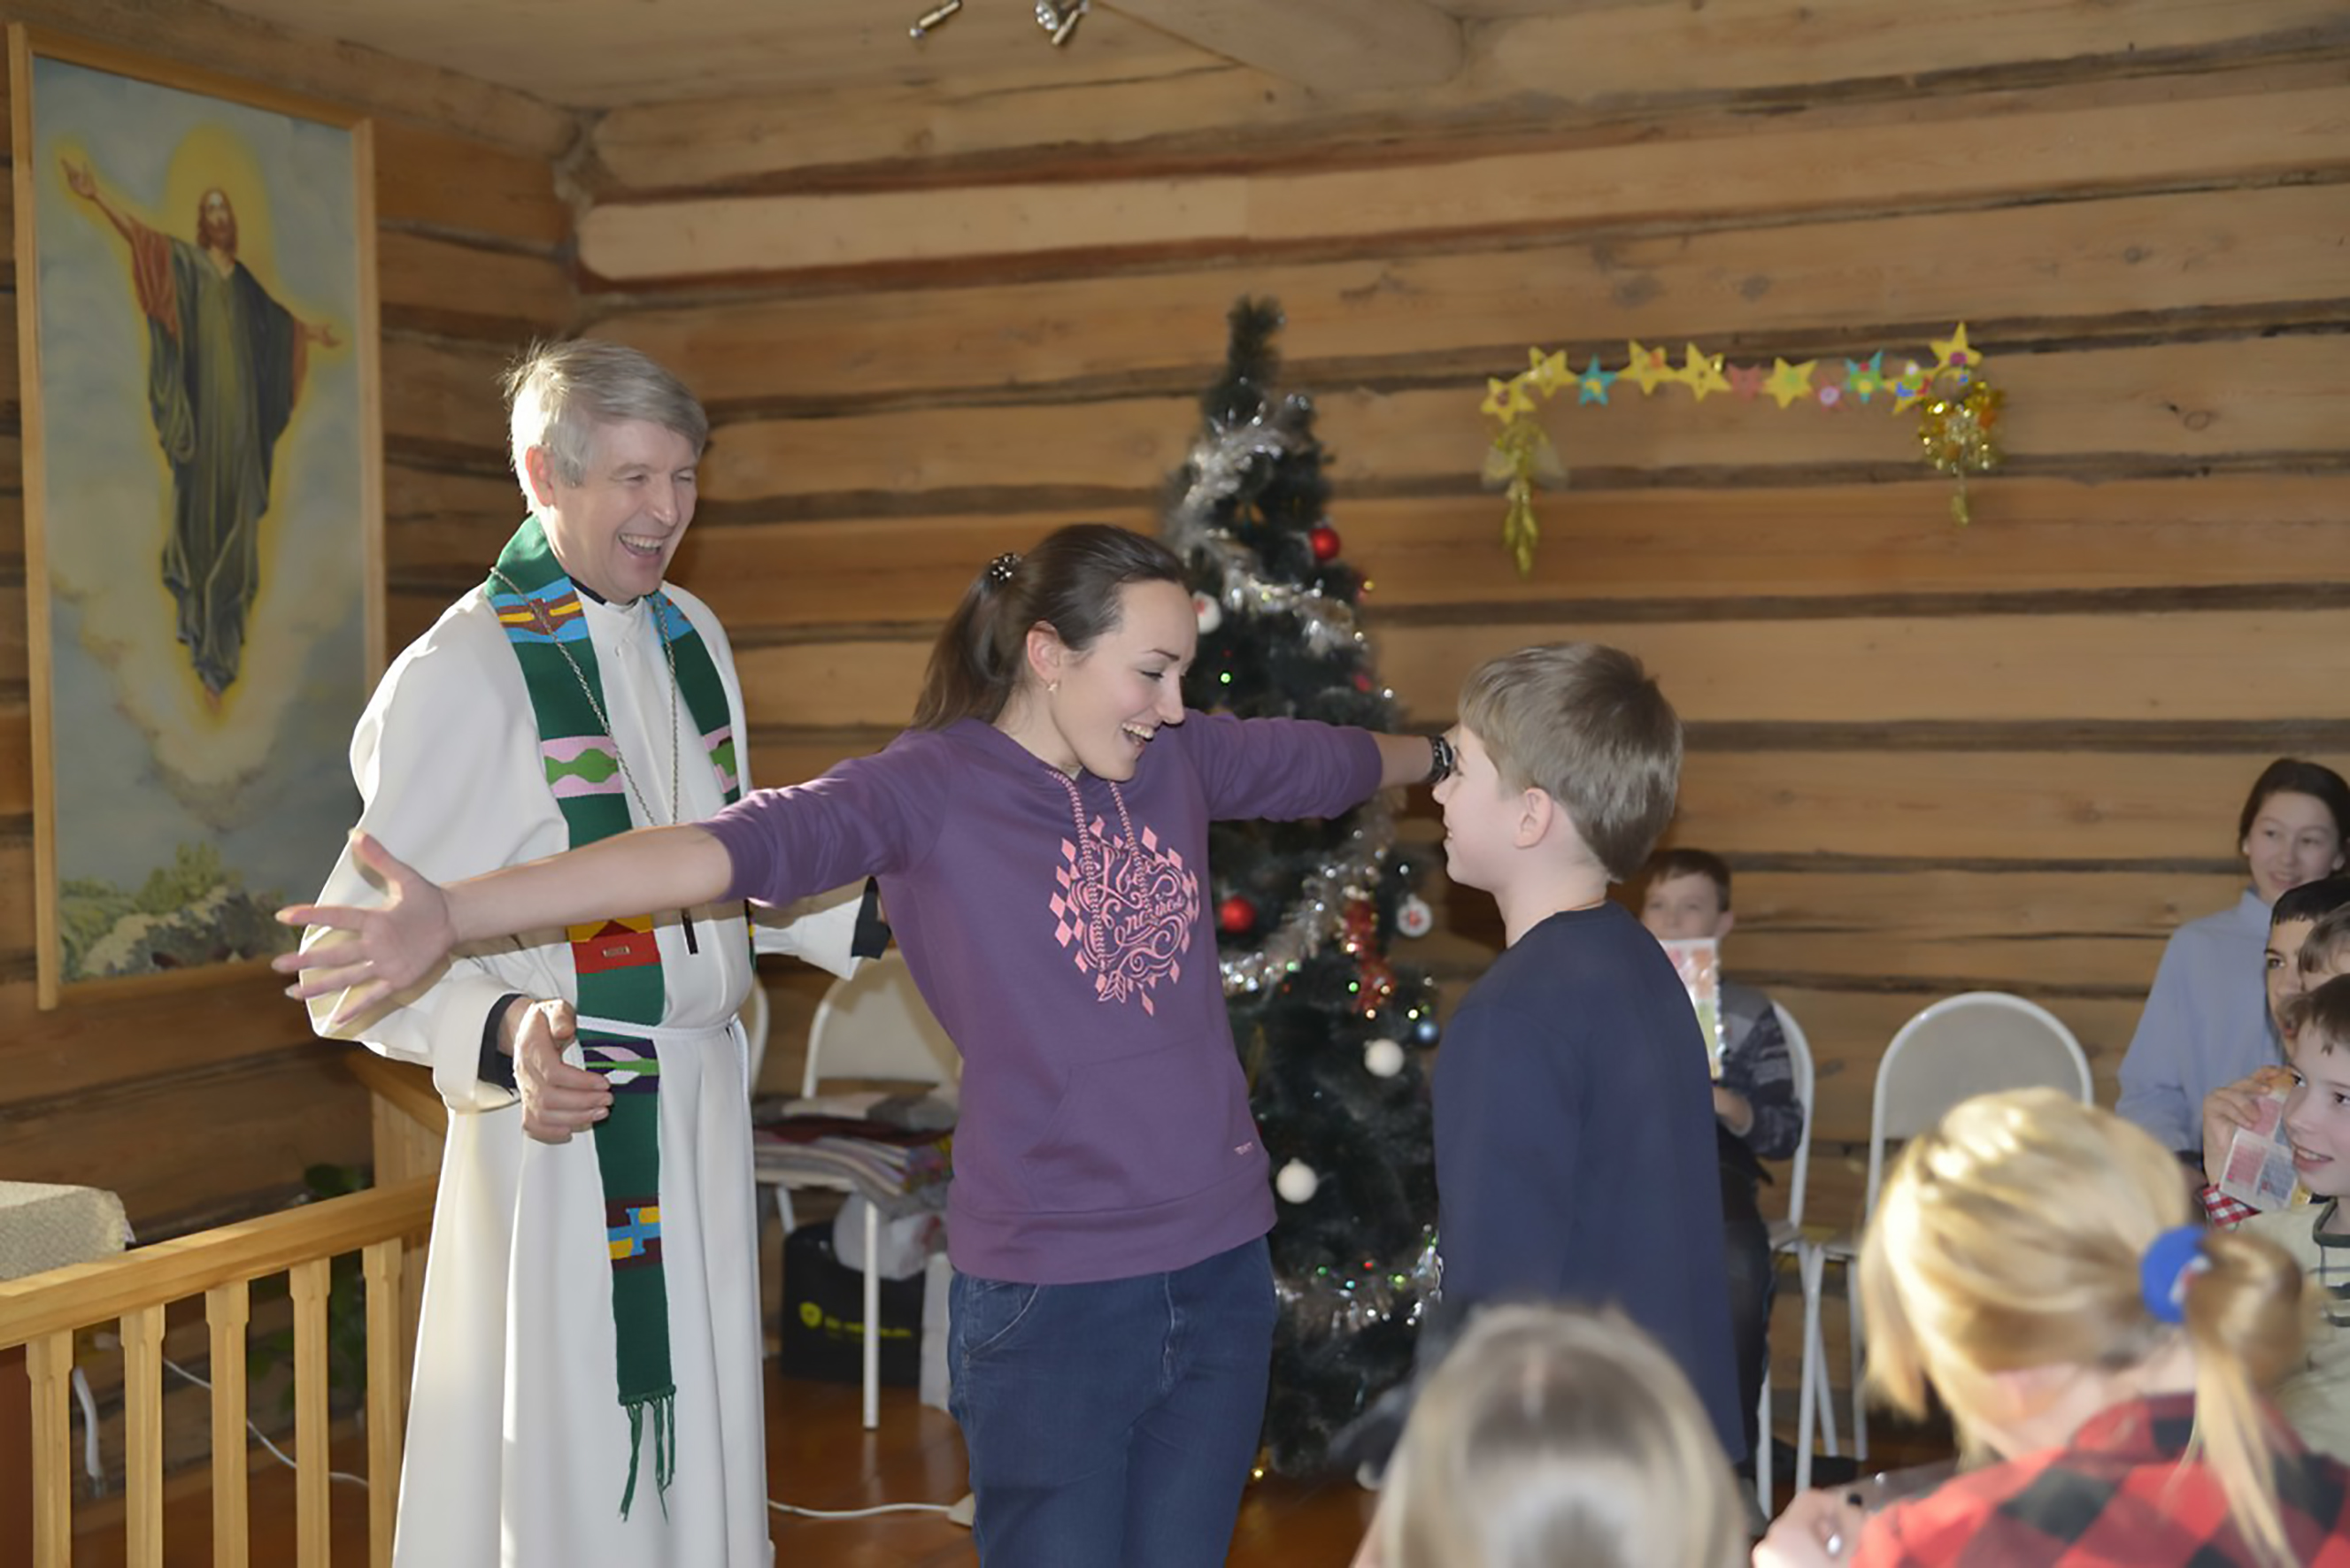 Naurava pappi ja iloinen nuori tyttö, joka levittää käsiään halatakseen nuorempaa poikaa.